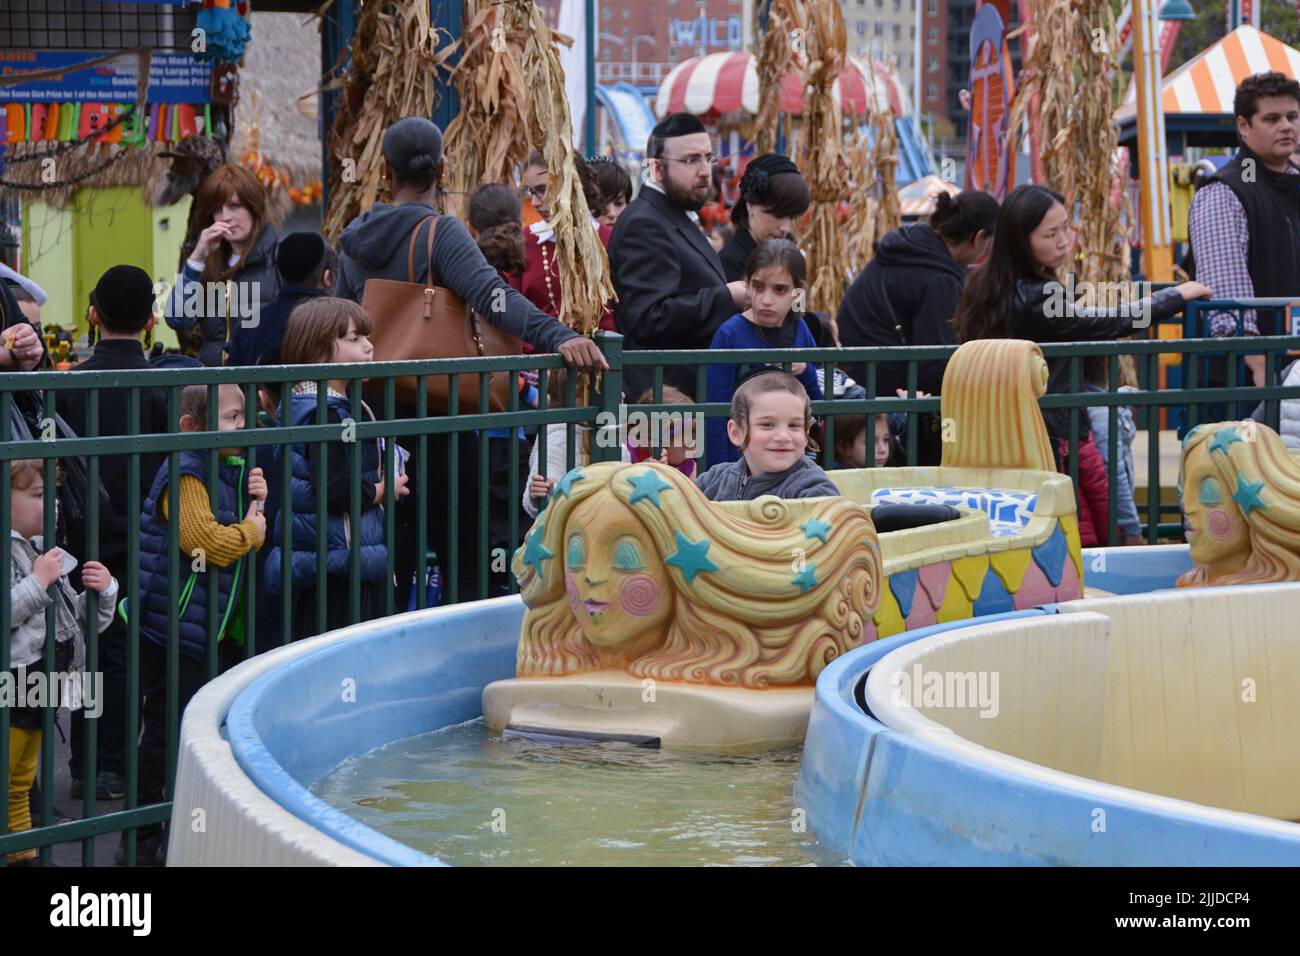 Las familias judías ortodoxas celebran la fiesta de Sukkos al divertirse en un parque de atracciones en Coney Island, Brooklyn, Nueva York. Foto de stock